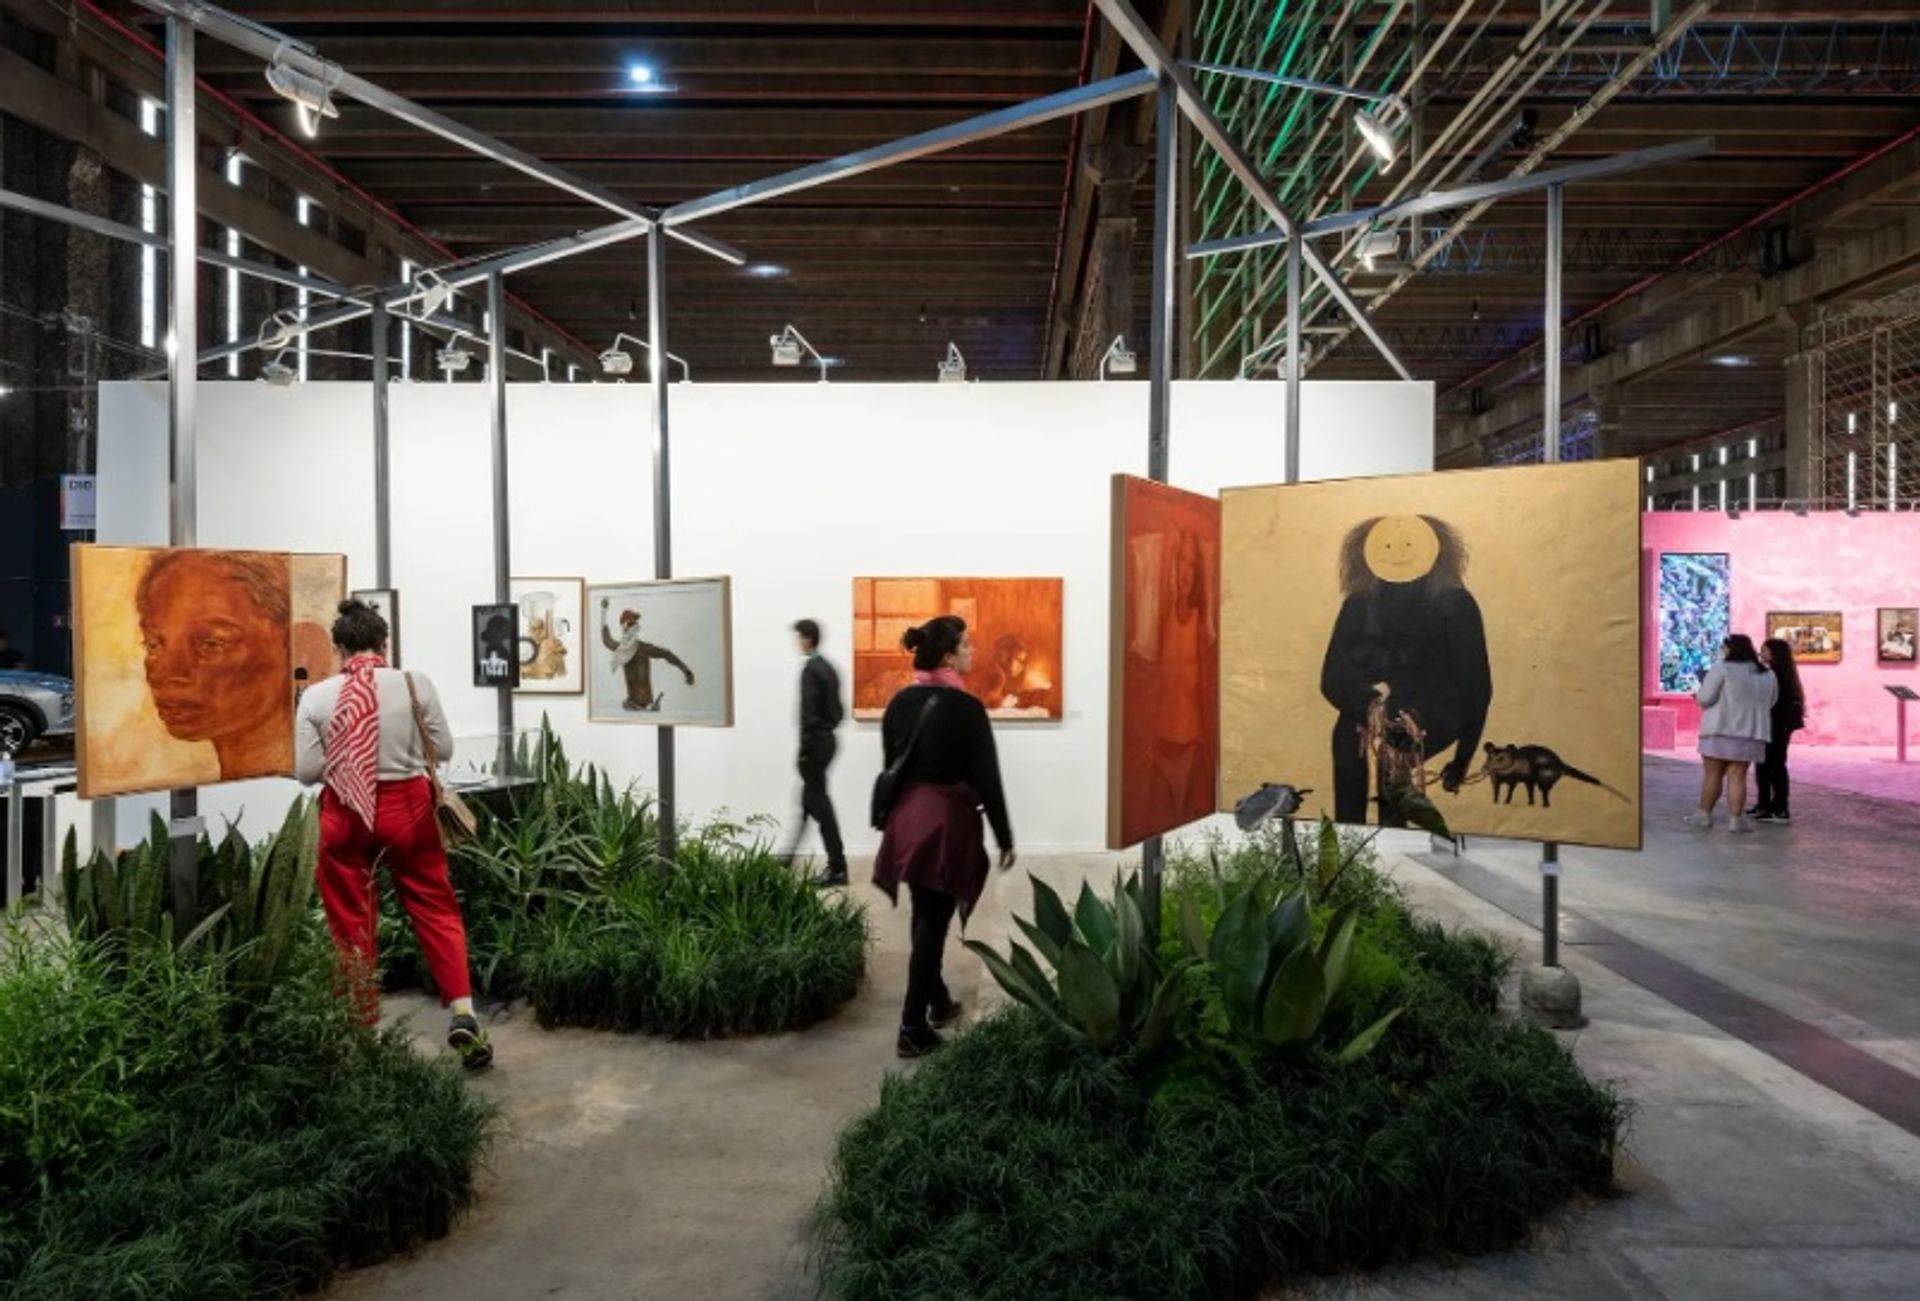 יריד האמנות Rotas Brasileiras מציג אמנים פחות מוכרים מחמישה אזורים בברזיל.

באדיבות SP-Arte.